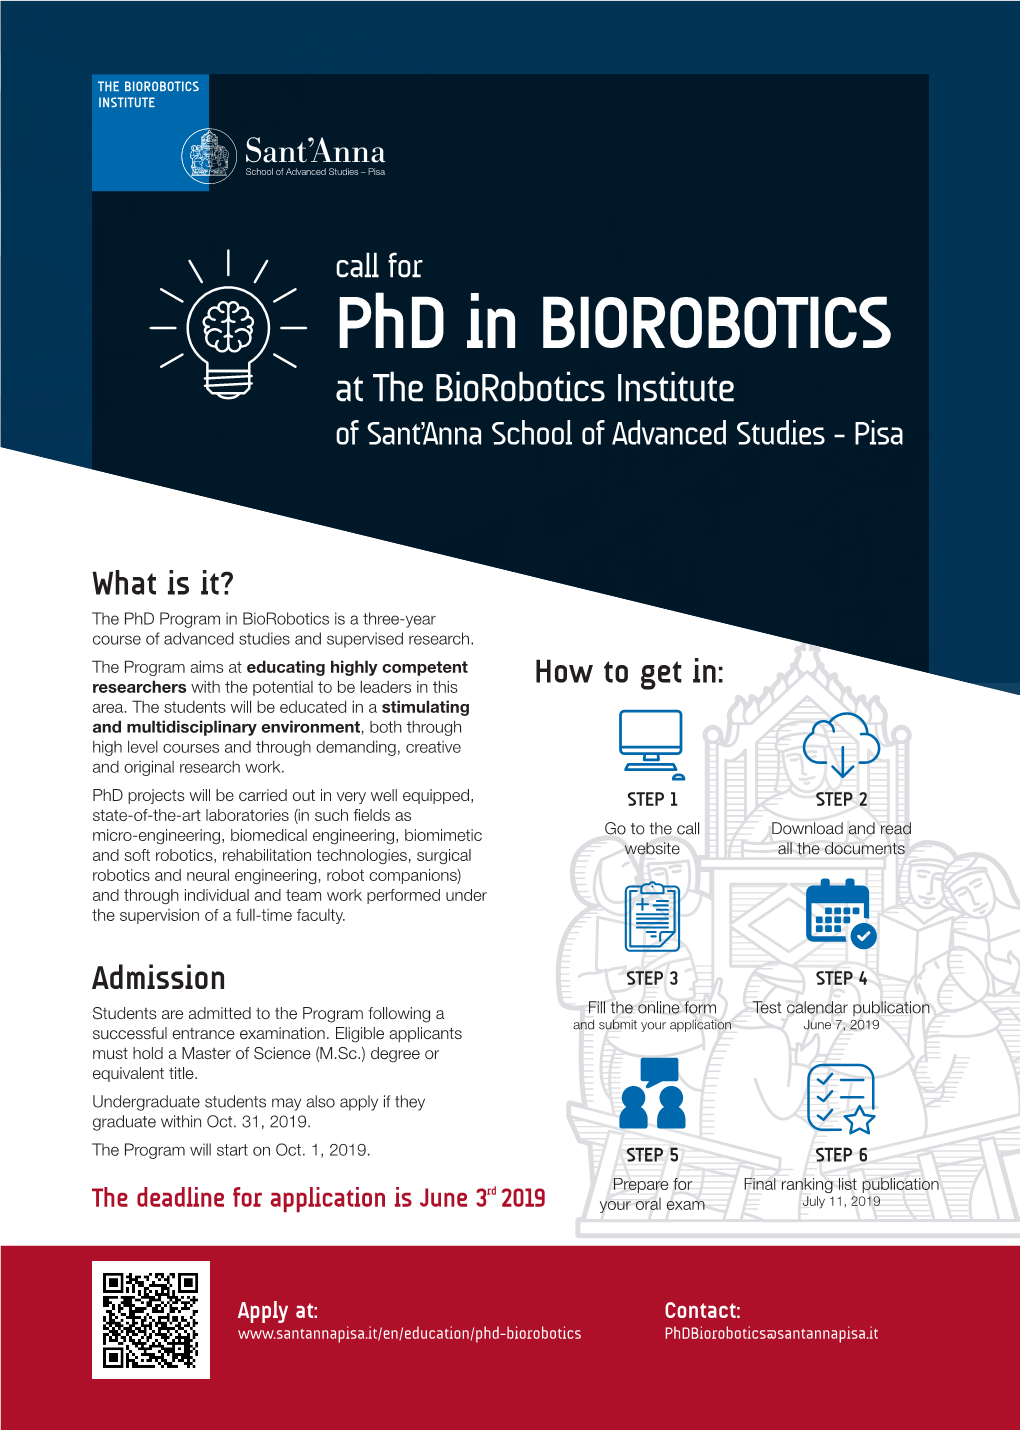 Phd in BIOROBOTICS at the Biorobotics Institute of Sant’Anna School of Advanced Studies - Pisa